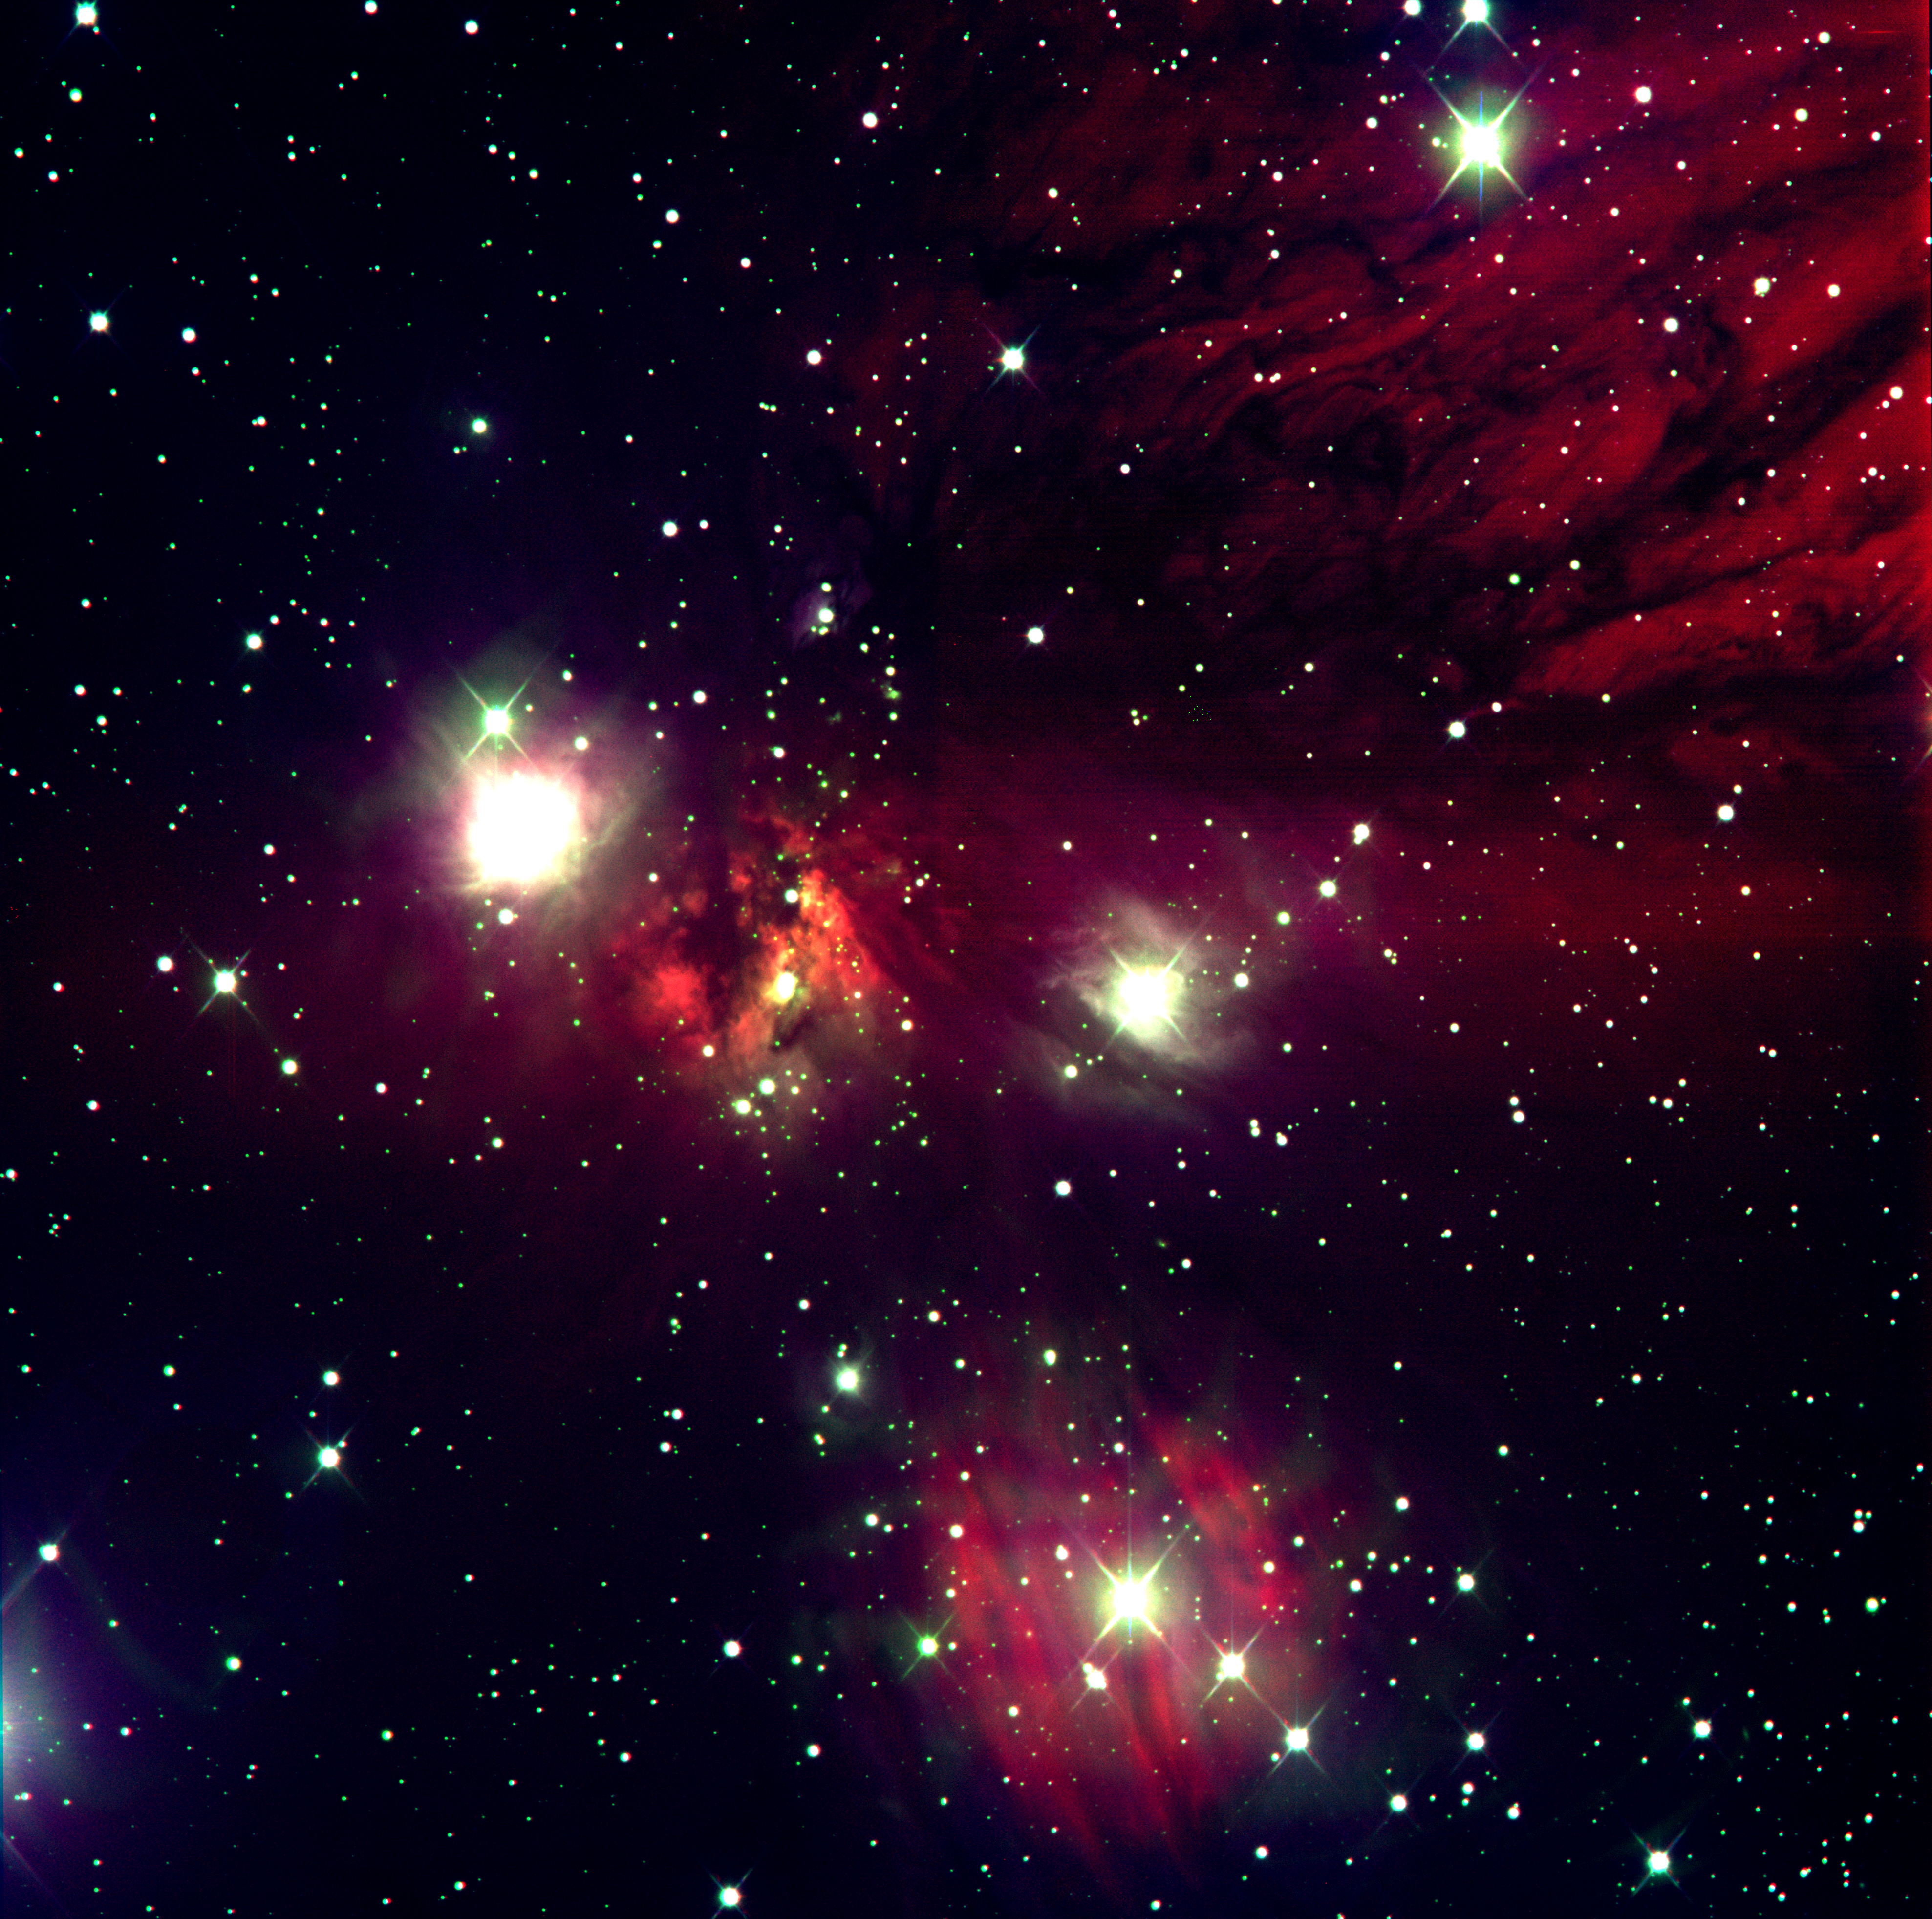 Imagen del cúmulo abierto Mon R2, tomada por los autores del artículo. En la misma pueden verse nebulosidades oscuras y brillantes junto a un nutrido grupo de estrellas jóvenes.